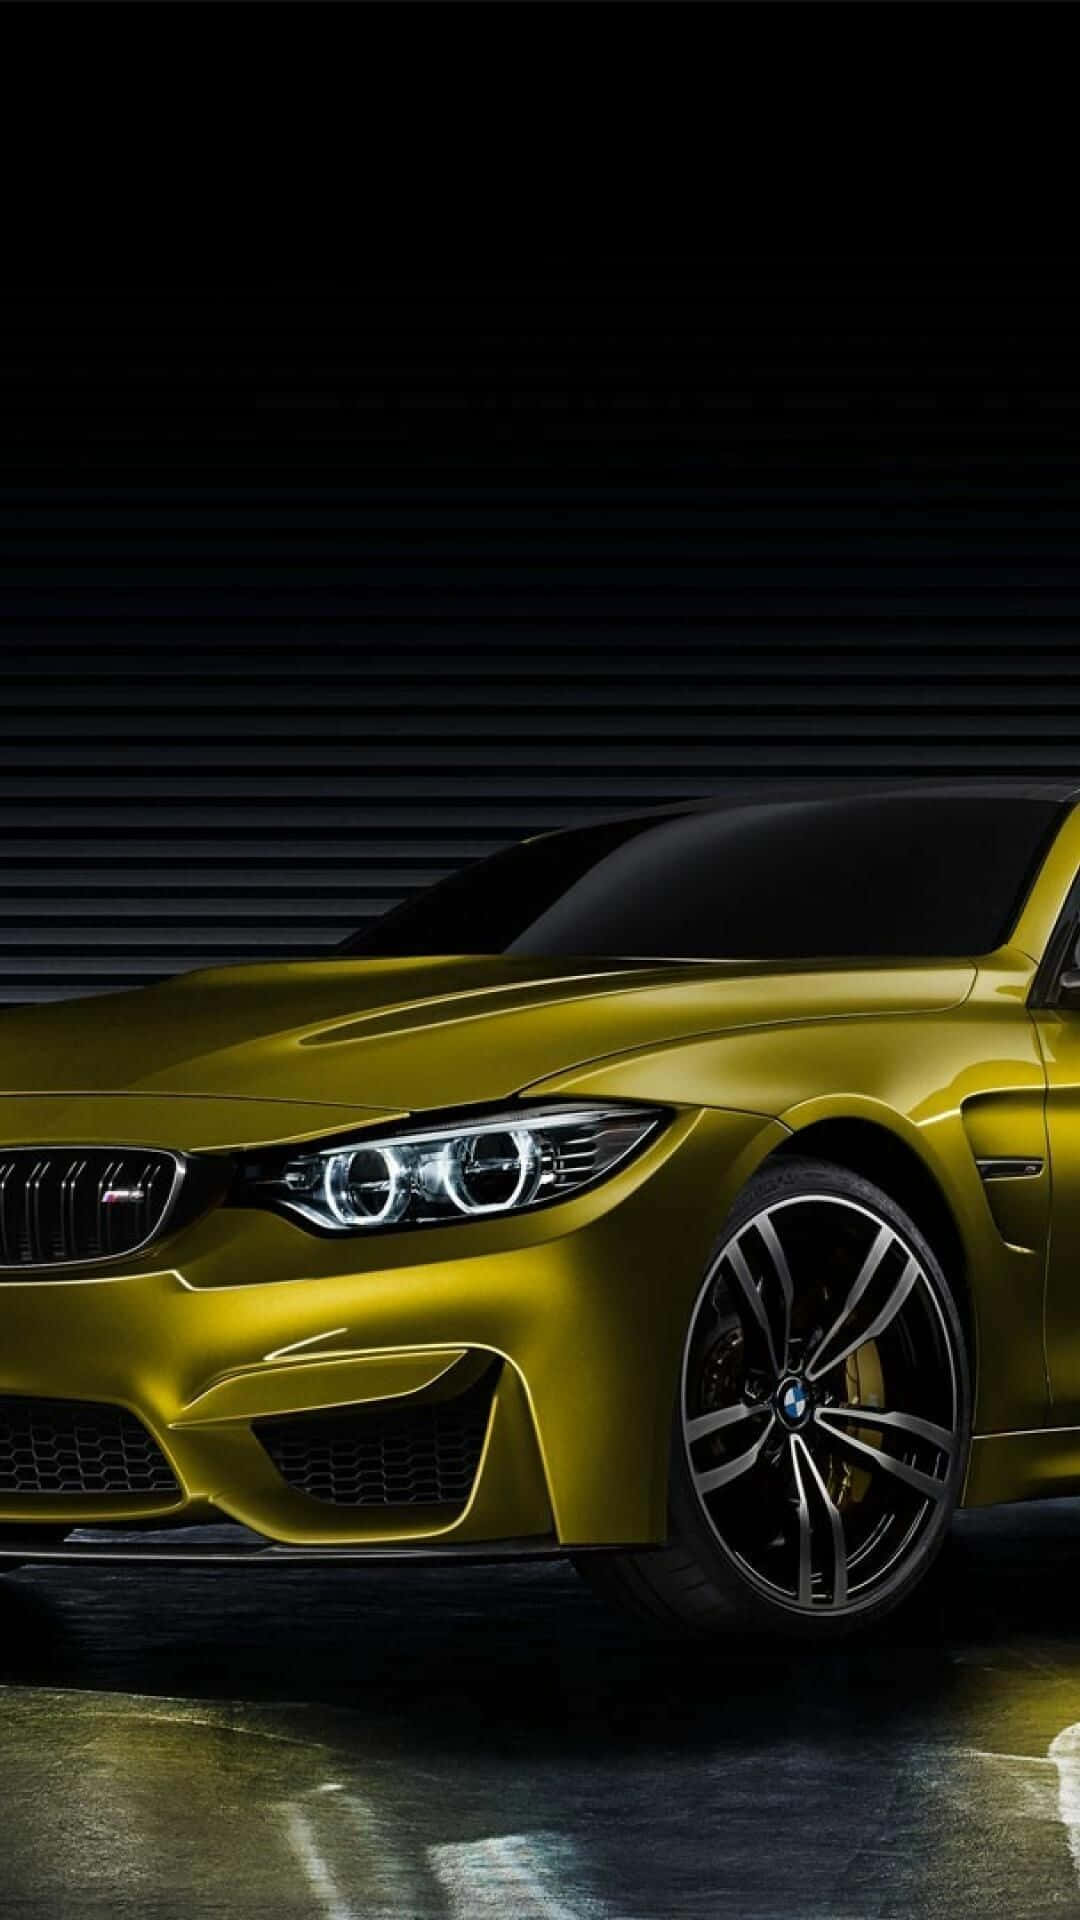 BMW - dòng xe hơi đẳng cấp và thể thao, luôn là sự lựa chọn hàng đầu cho những tín đồ của xe hơi. Hãy chiêm ngưỡng những bức ảnh đẹp của BMW và cảm nhận sự hoàn hảo và tốc độ của dòng xe này.